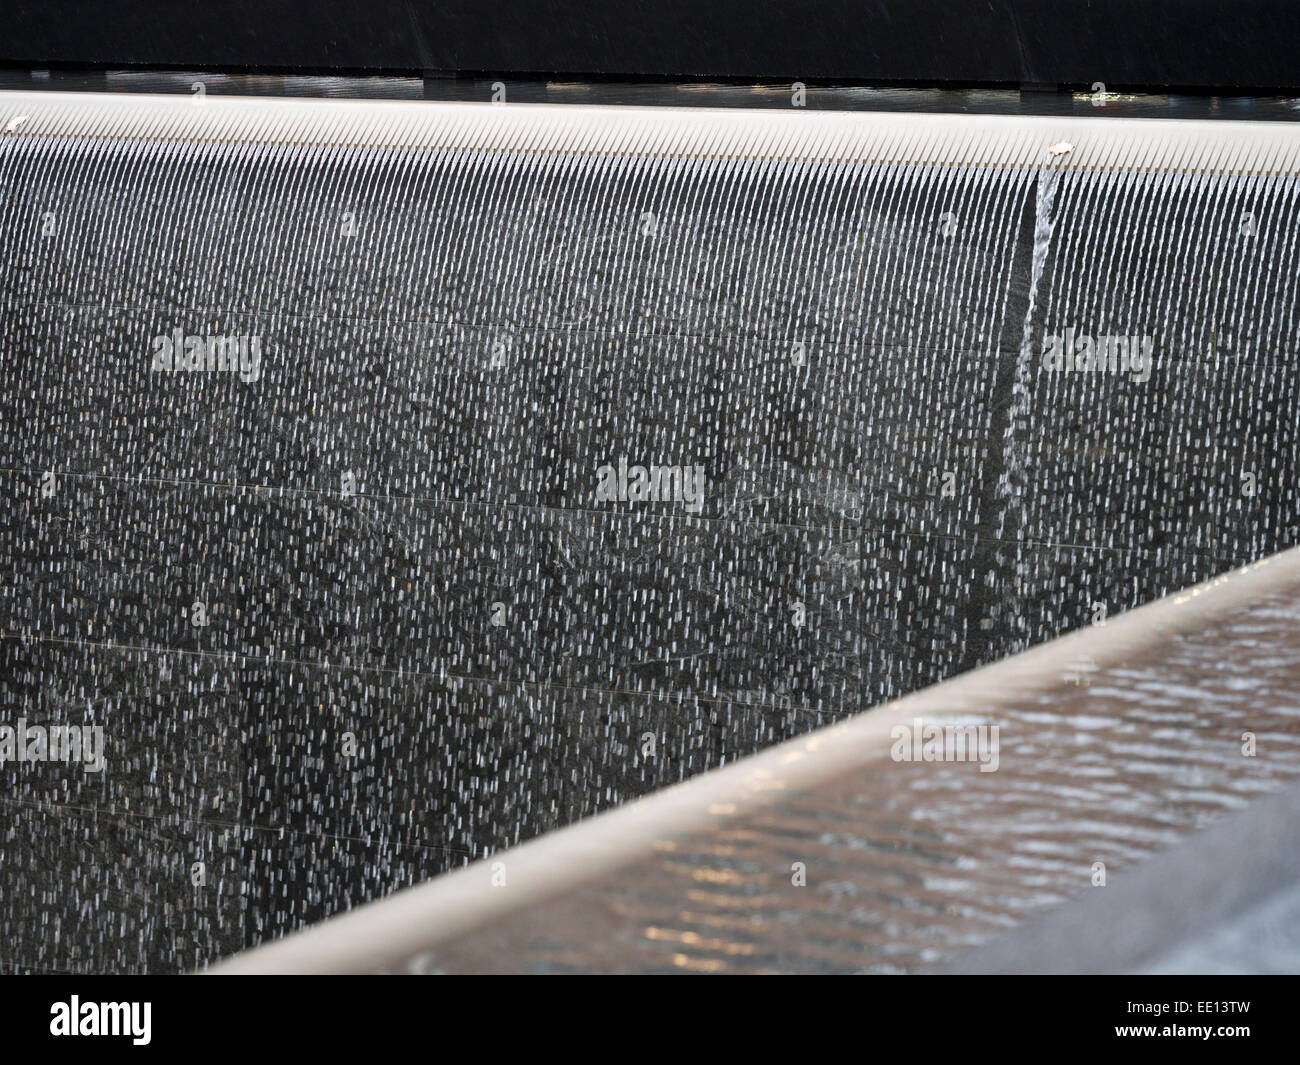 Modifié le débit : falls Memorial détail. Détail de la cascade qui compose une partie clé du World Trade Center 9/11 memorial Banque D'Images